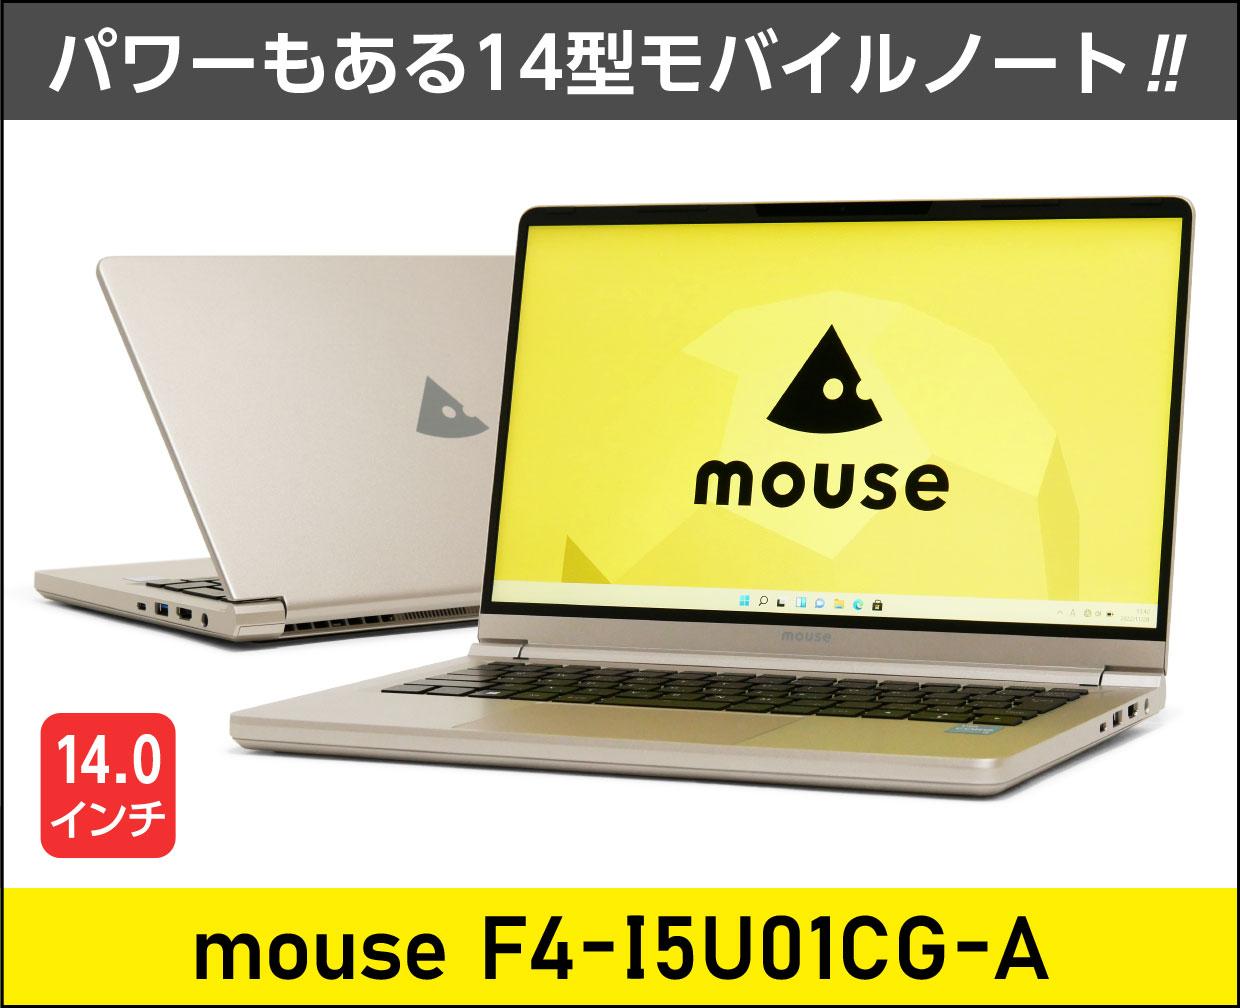 マウスコンピューター mouse F4-I5U01CG-Aのメイン画像